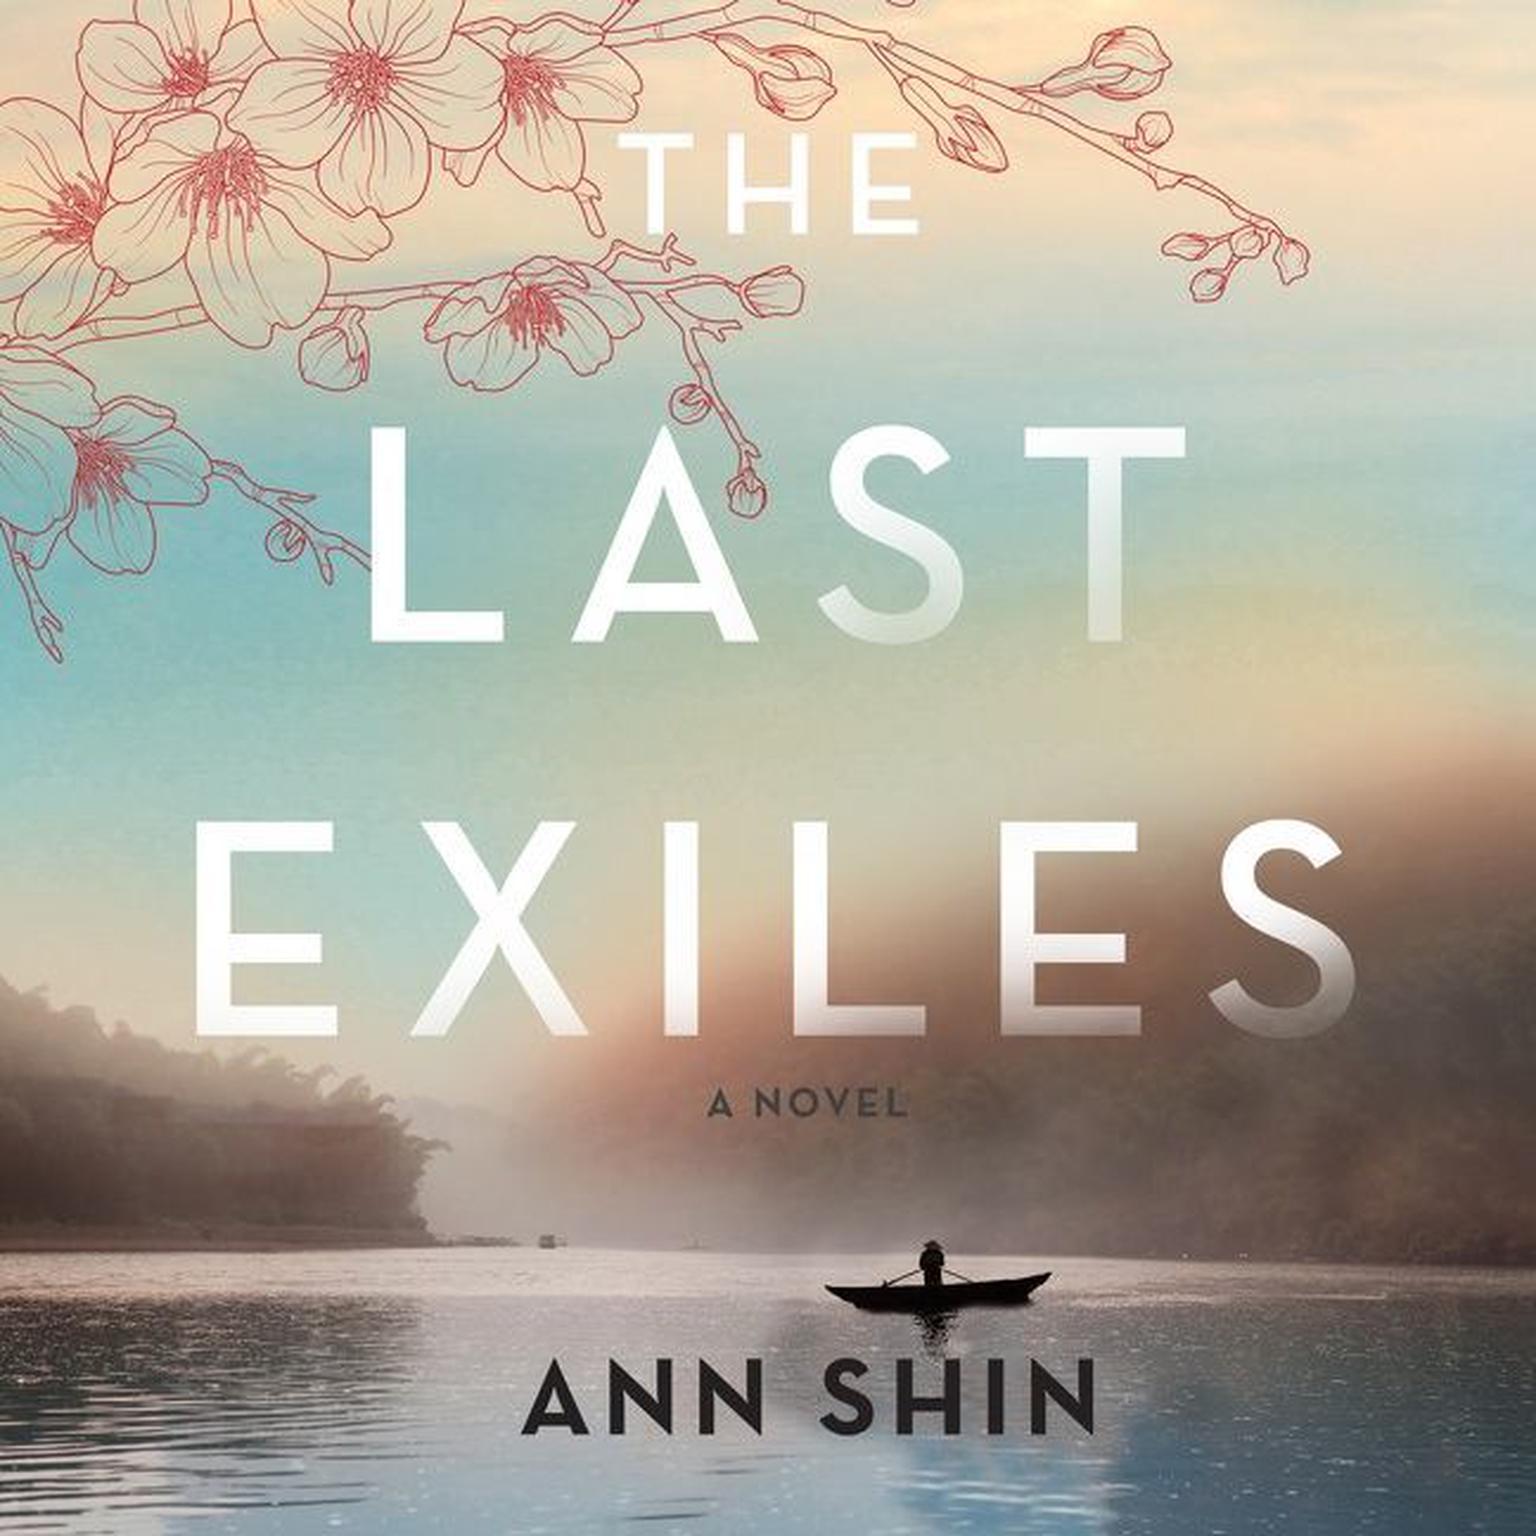 The Last Exiles: A Novel Audiobook, by Ann Shin